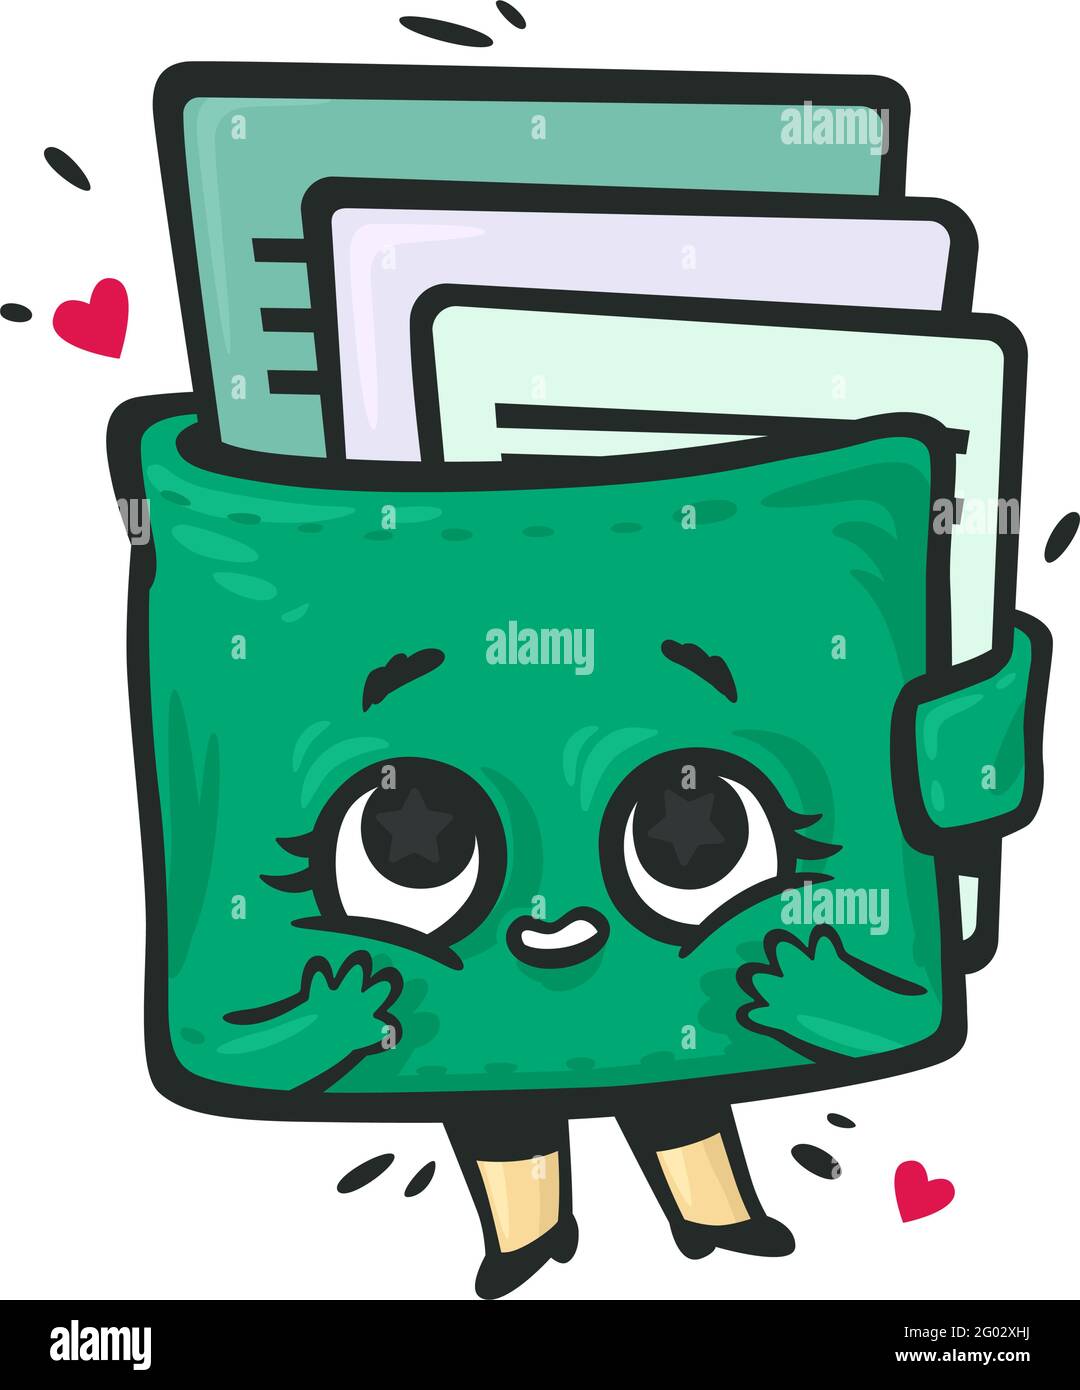 Geldbörse in Form eines Kawaii-Charakters mit Karten. Grüne Geldbörse mit Augen, Armen und Beinen in Ehrfurcht vor dem Inhalt. Vektor. Illustration für Investitionen Stock Vektor